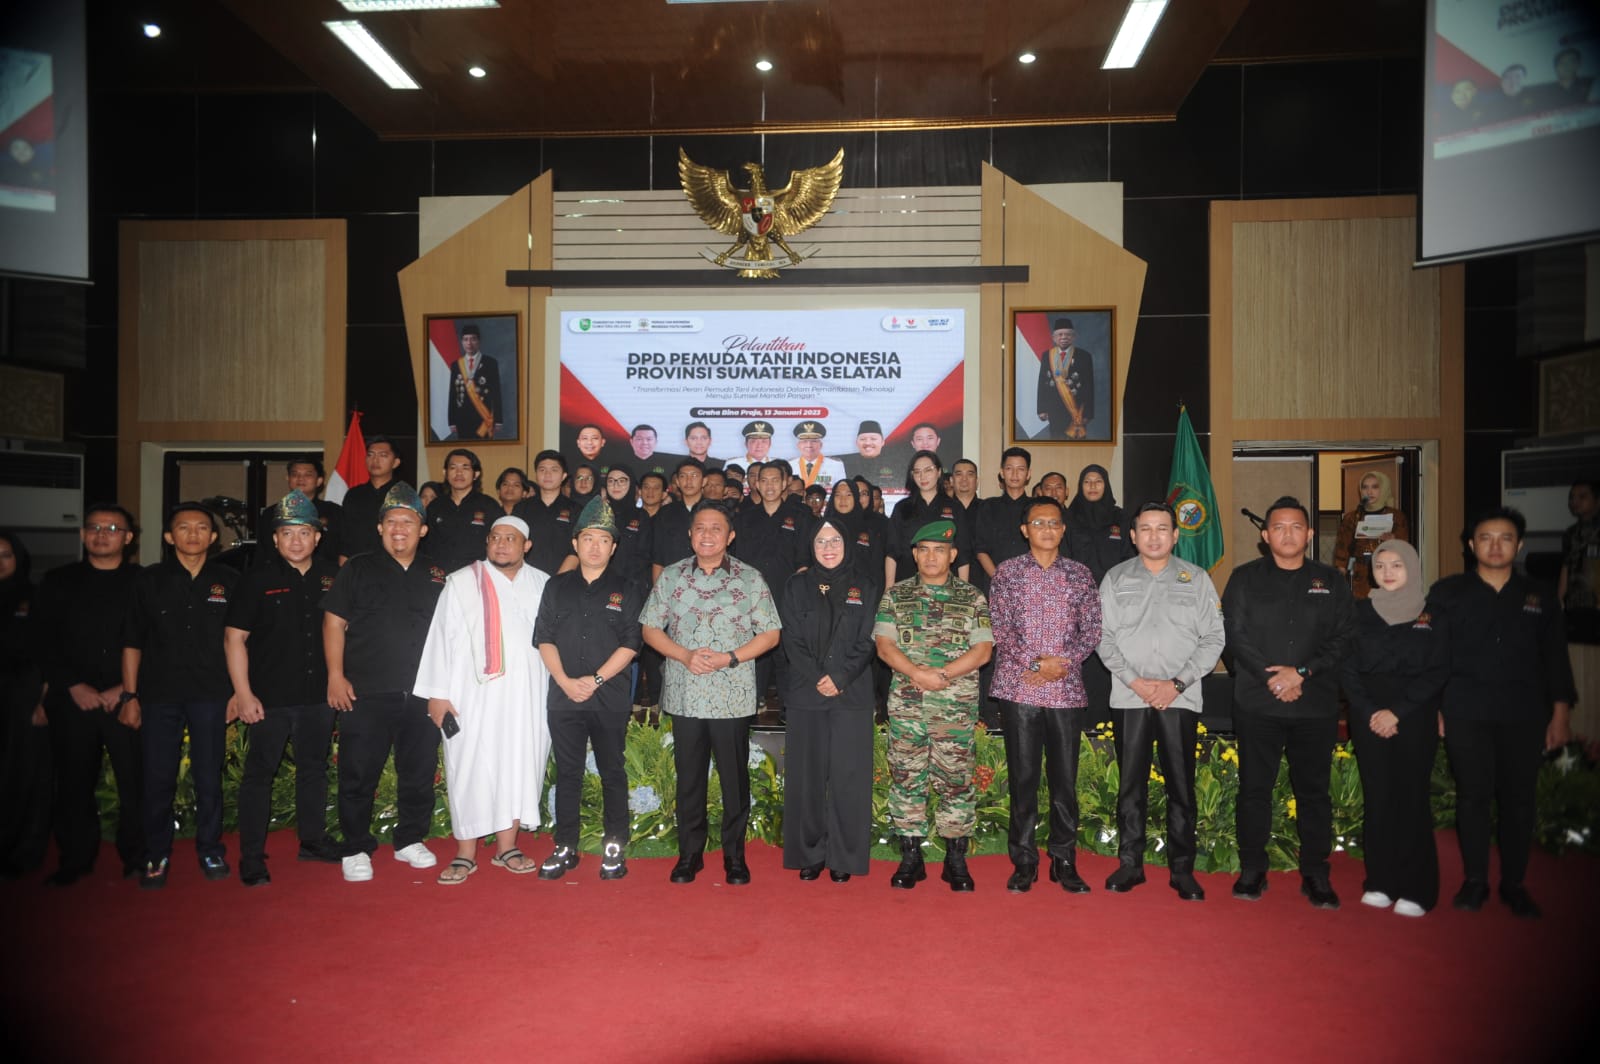 Adzanu Getar Nusantara Resmi Jabat Sebagai Ketua DPD Pemuda Tani Provinsi Sumatera Selatan 